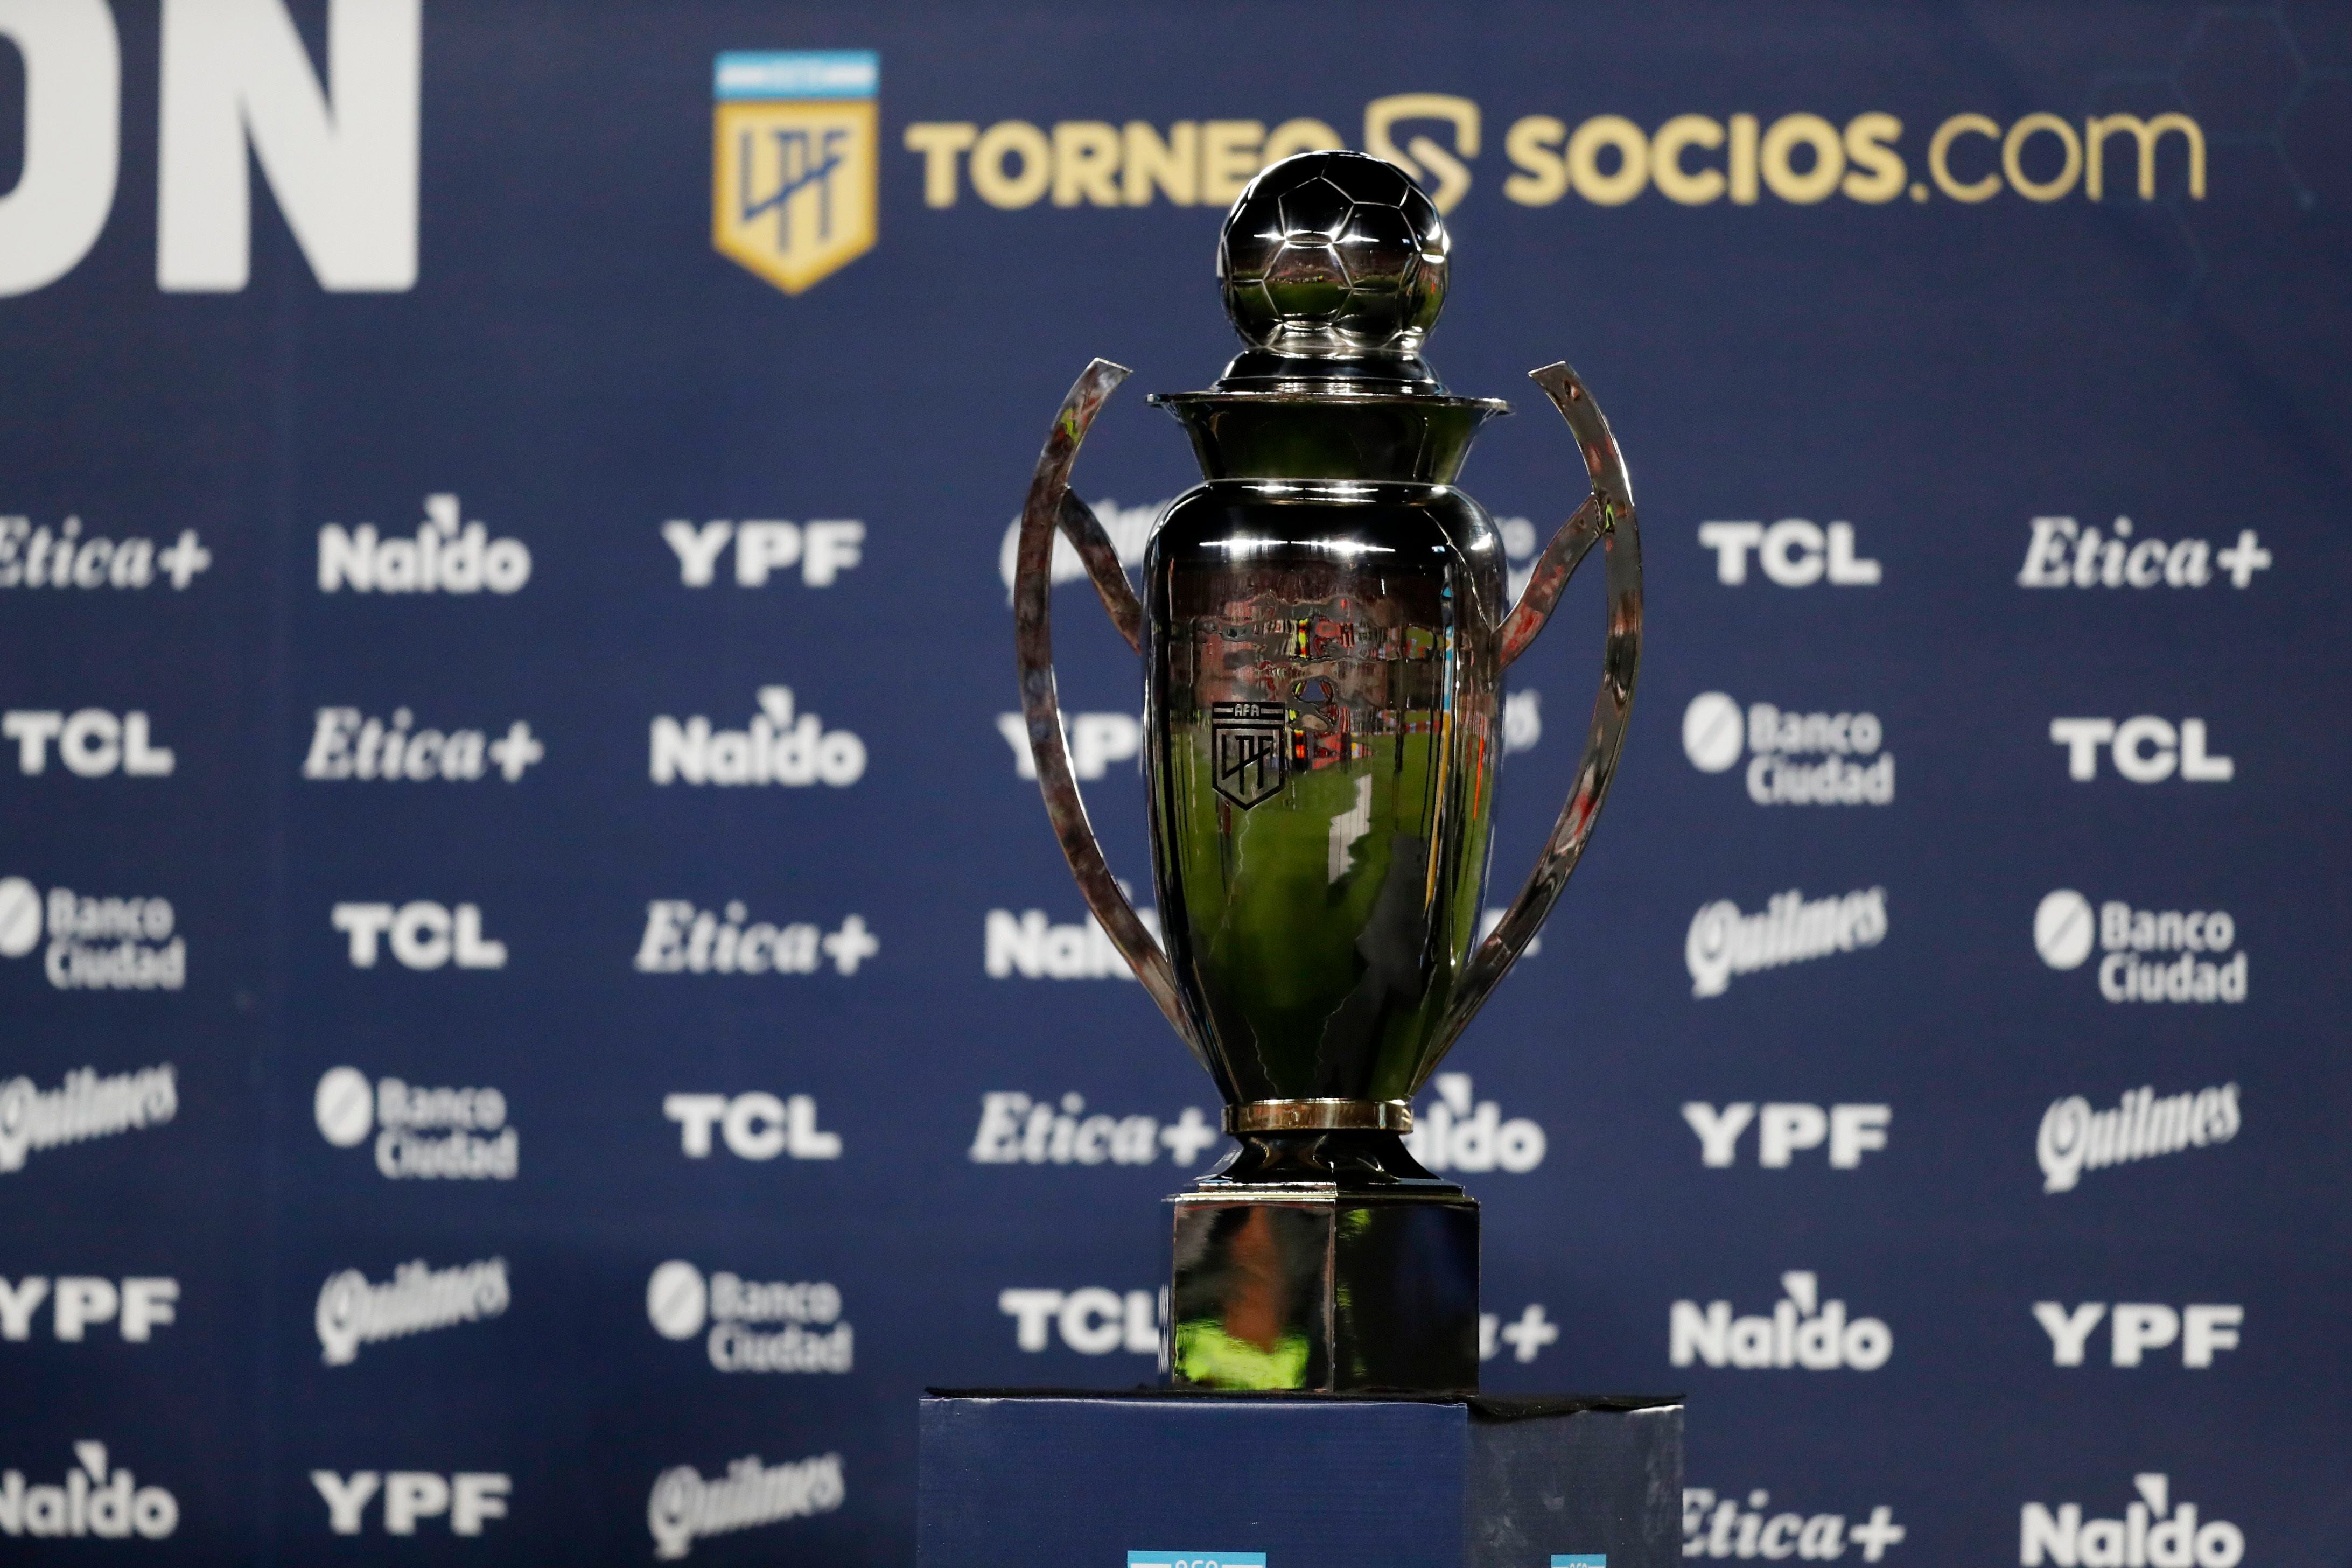 El último trofeo de liga argentina fue para River: ¿de quién será el próximo? (REUTERS/Agustin Marcarian)